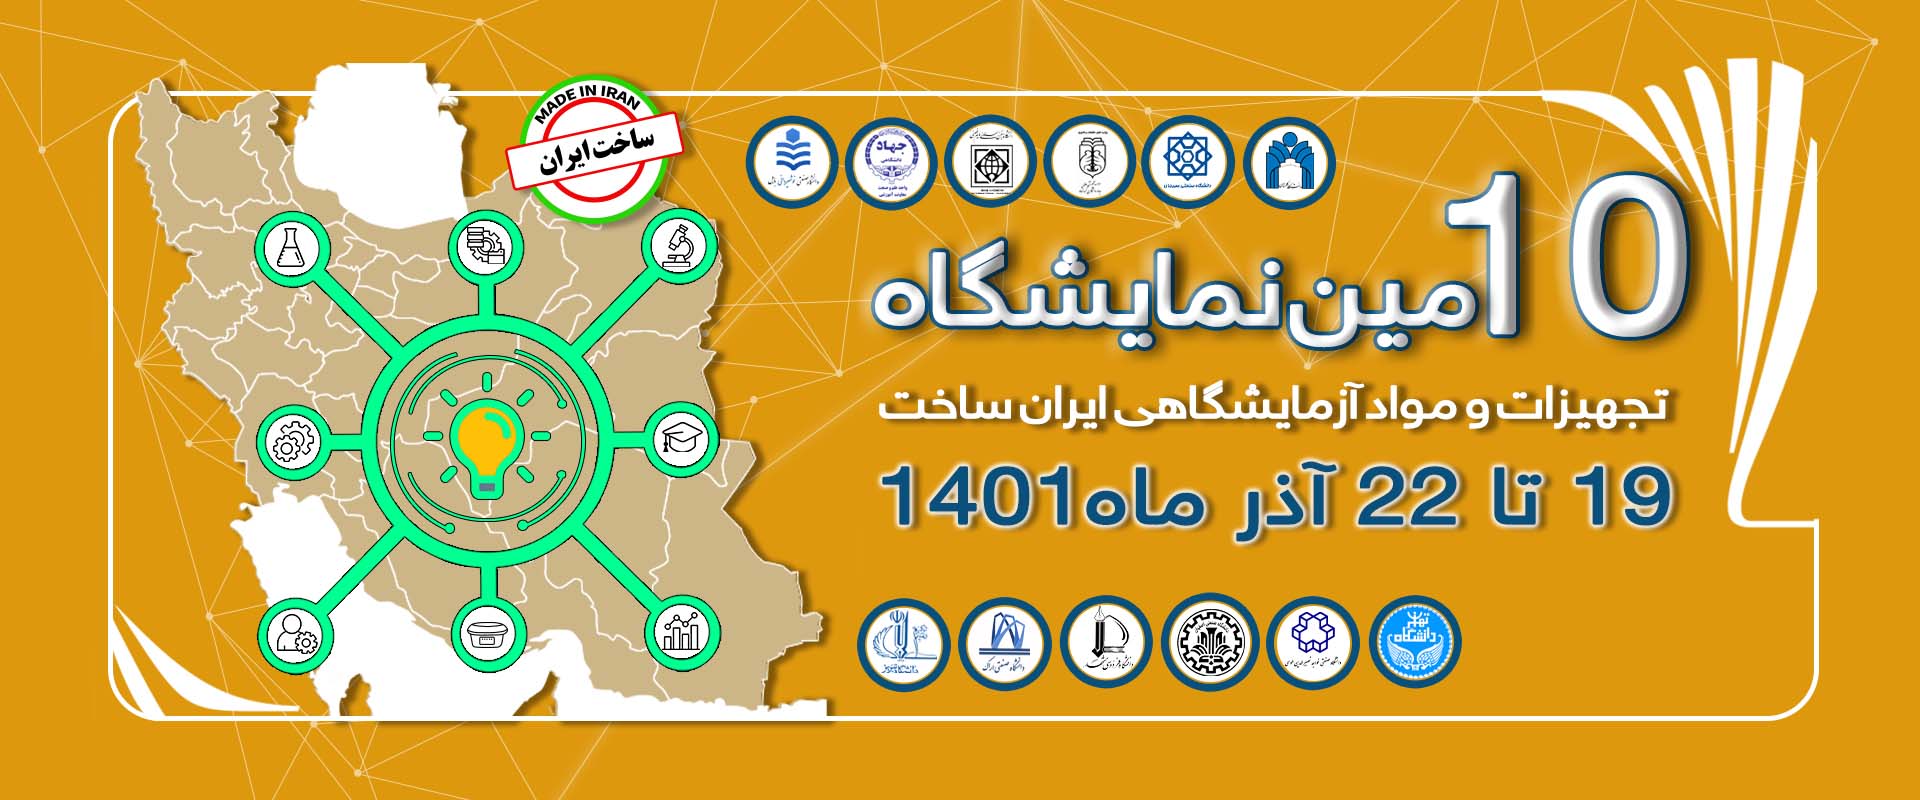 10 مین نمایشگاه تجهیزات و مواد آزمایشگاهی ایران